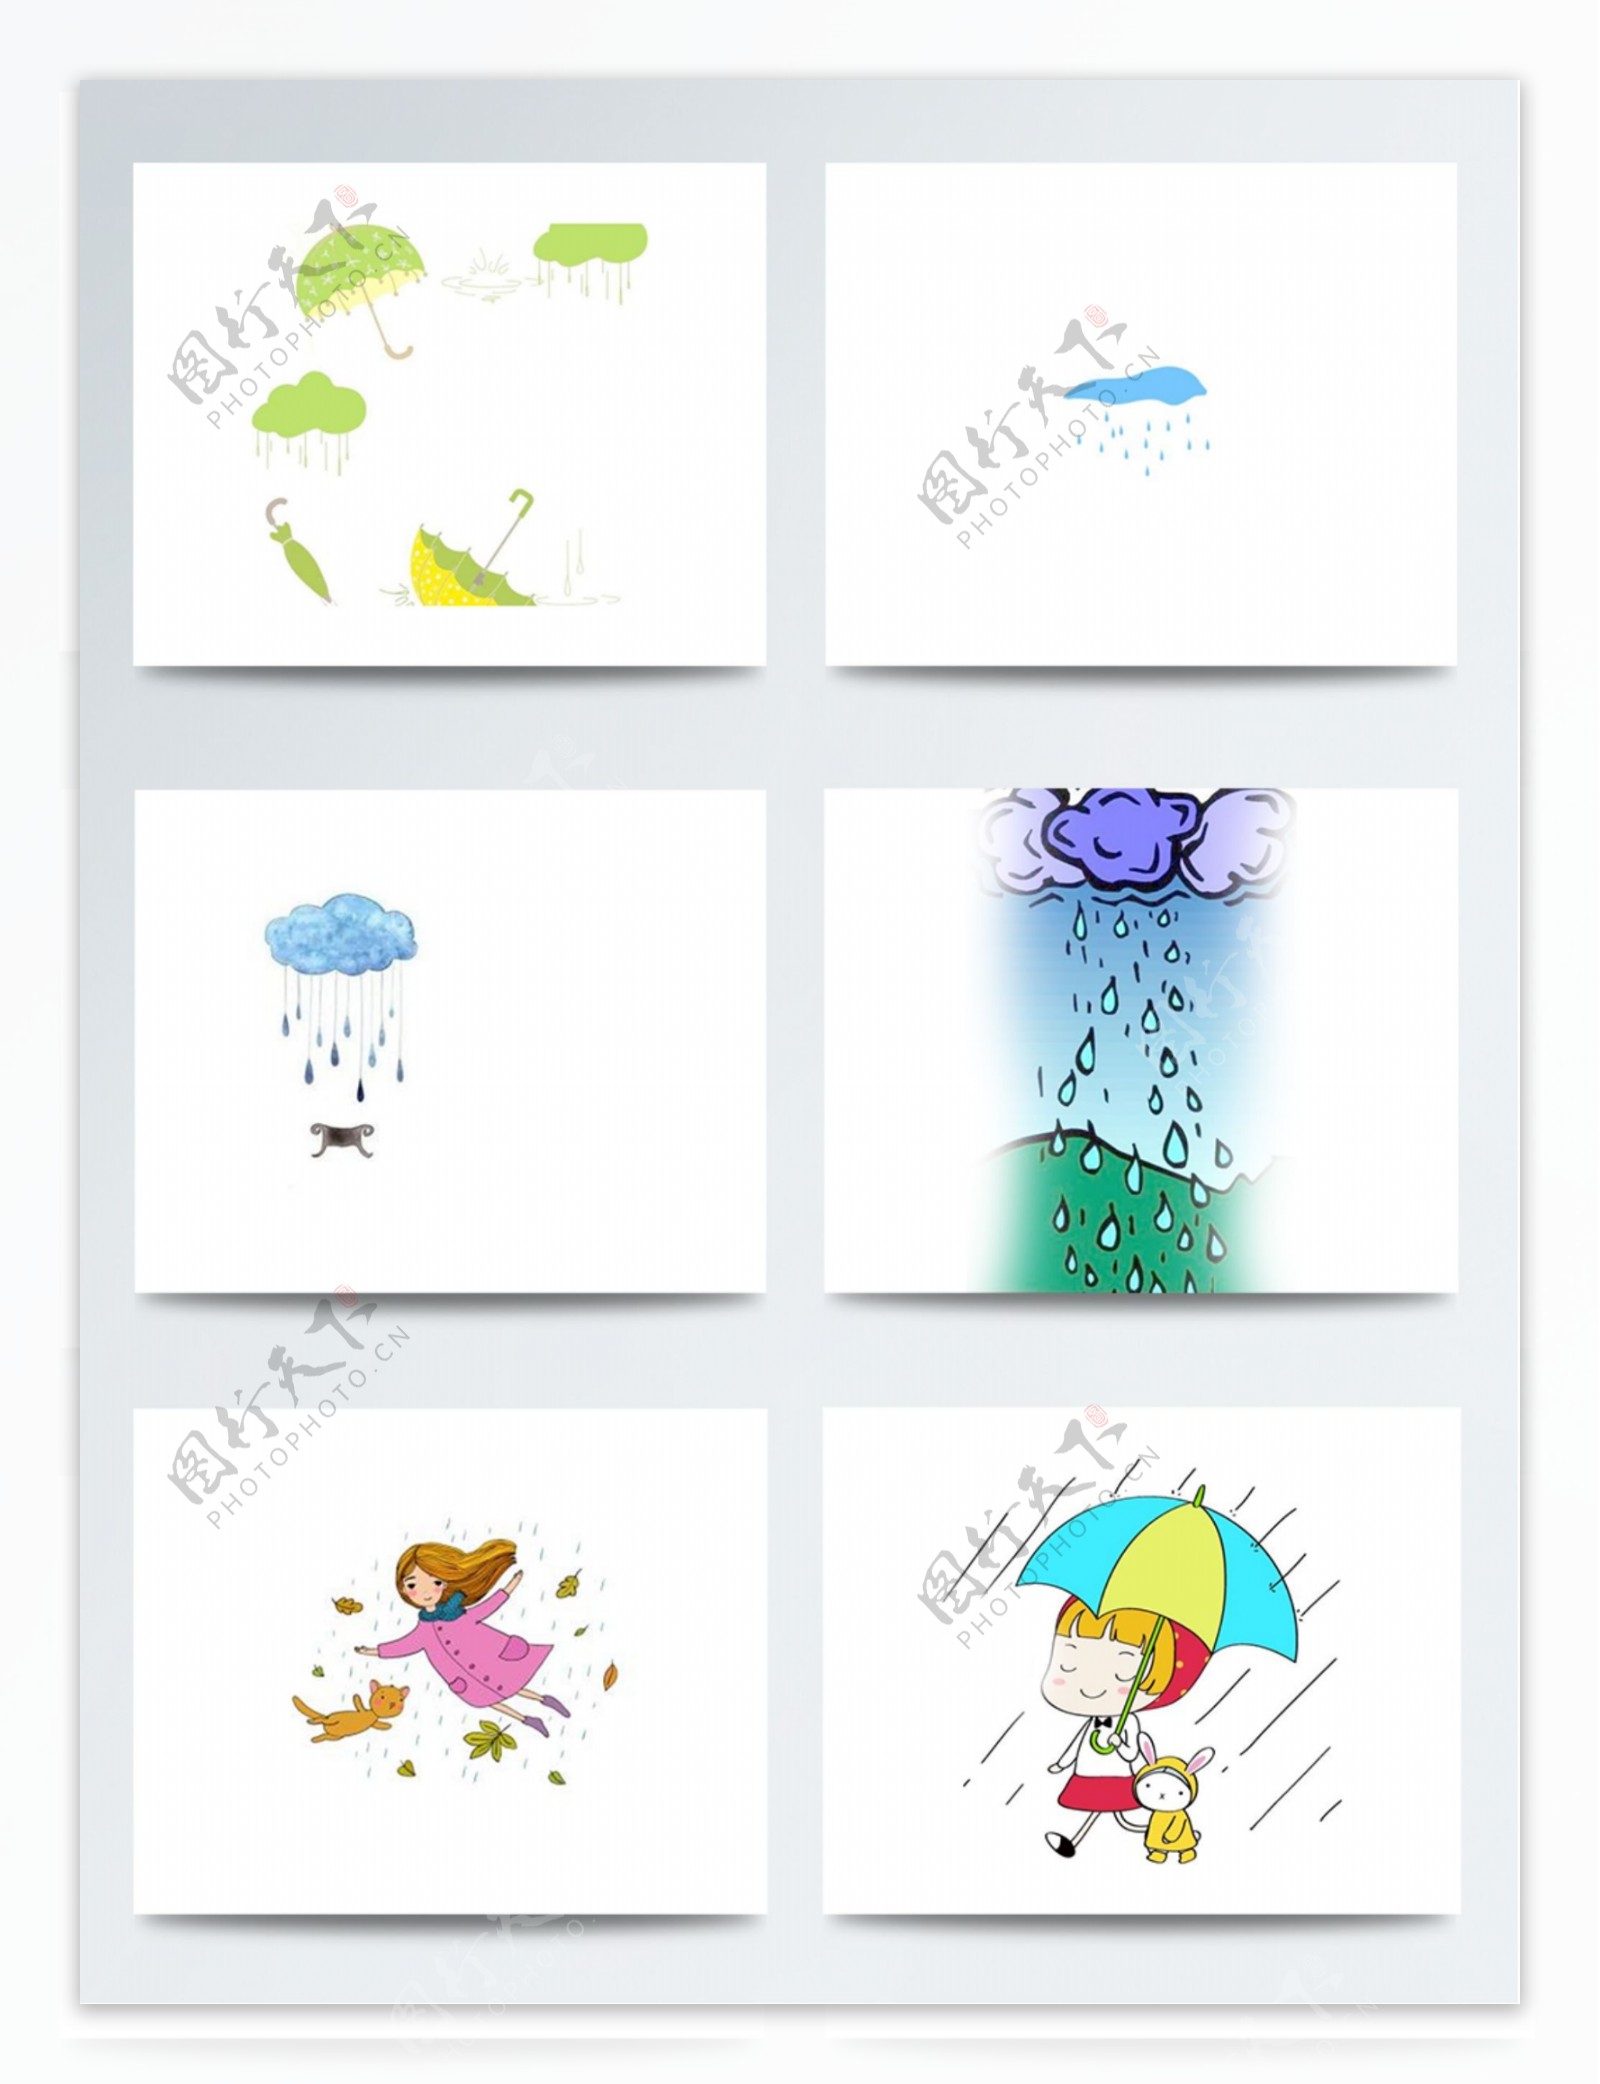 彩色卡通插画下雨天素材